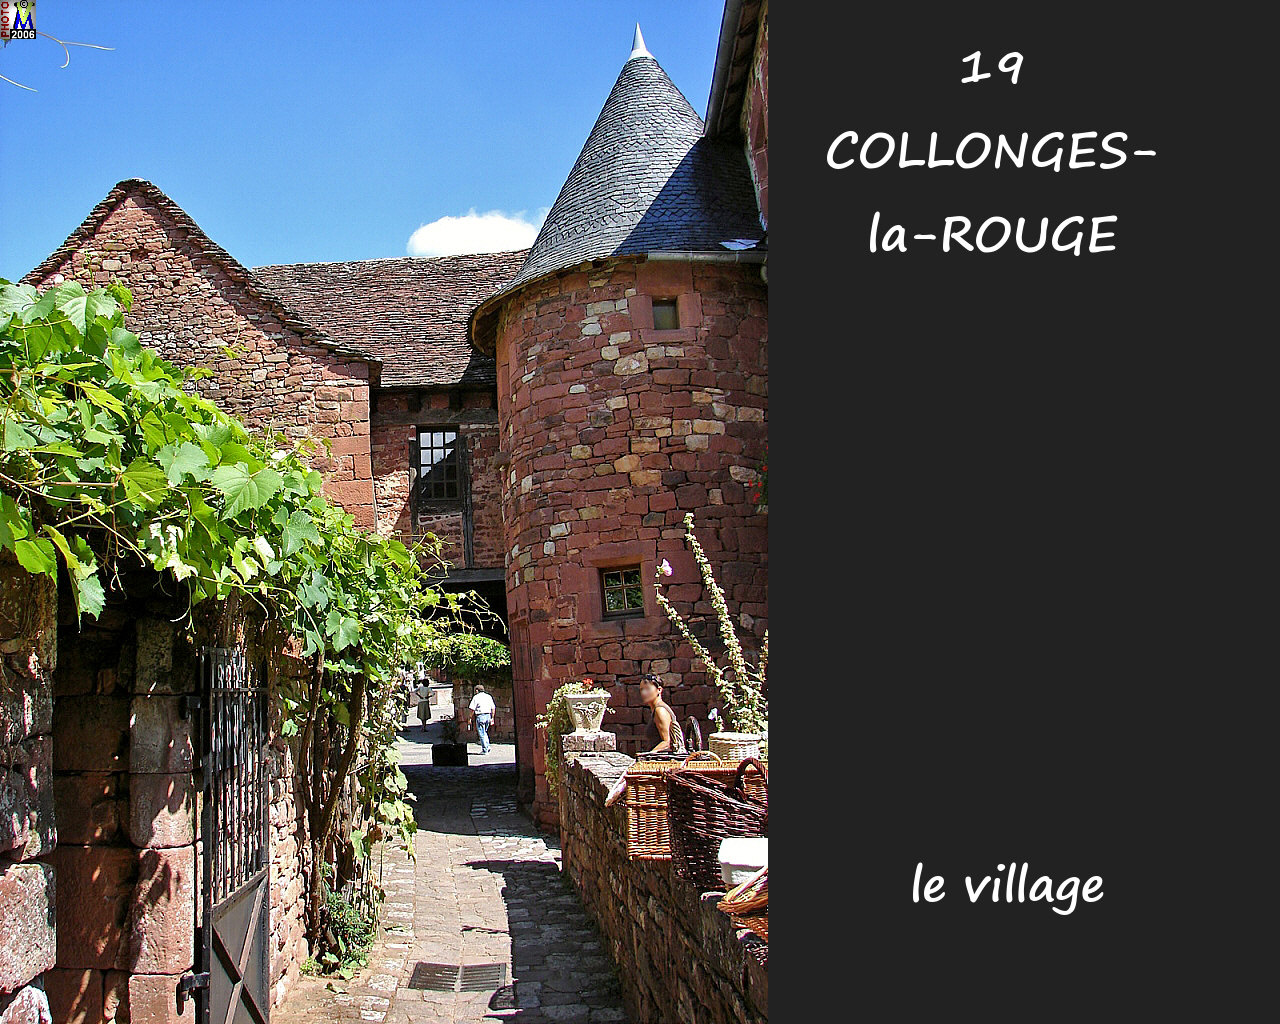 19COLLONGES-ROUGE_village_172.jpg